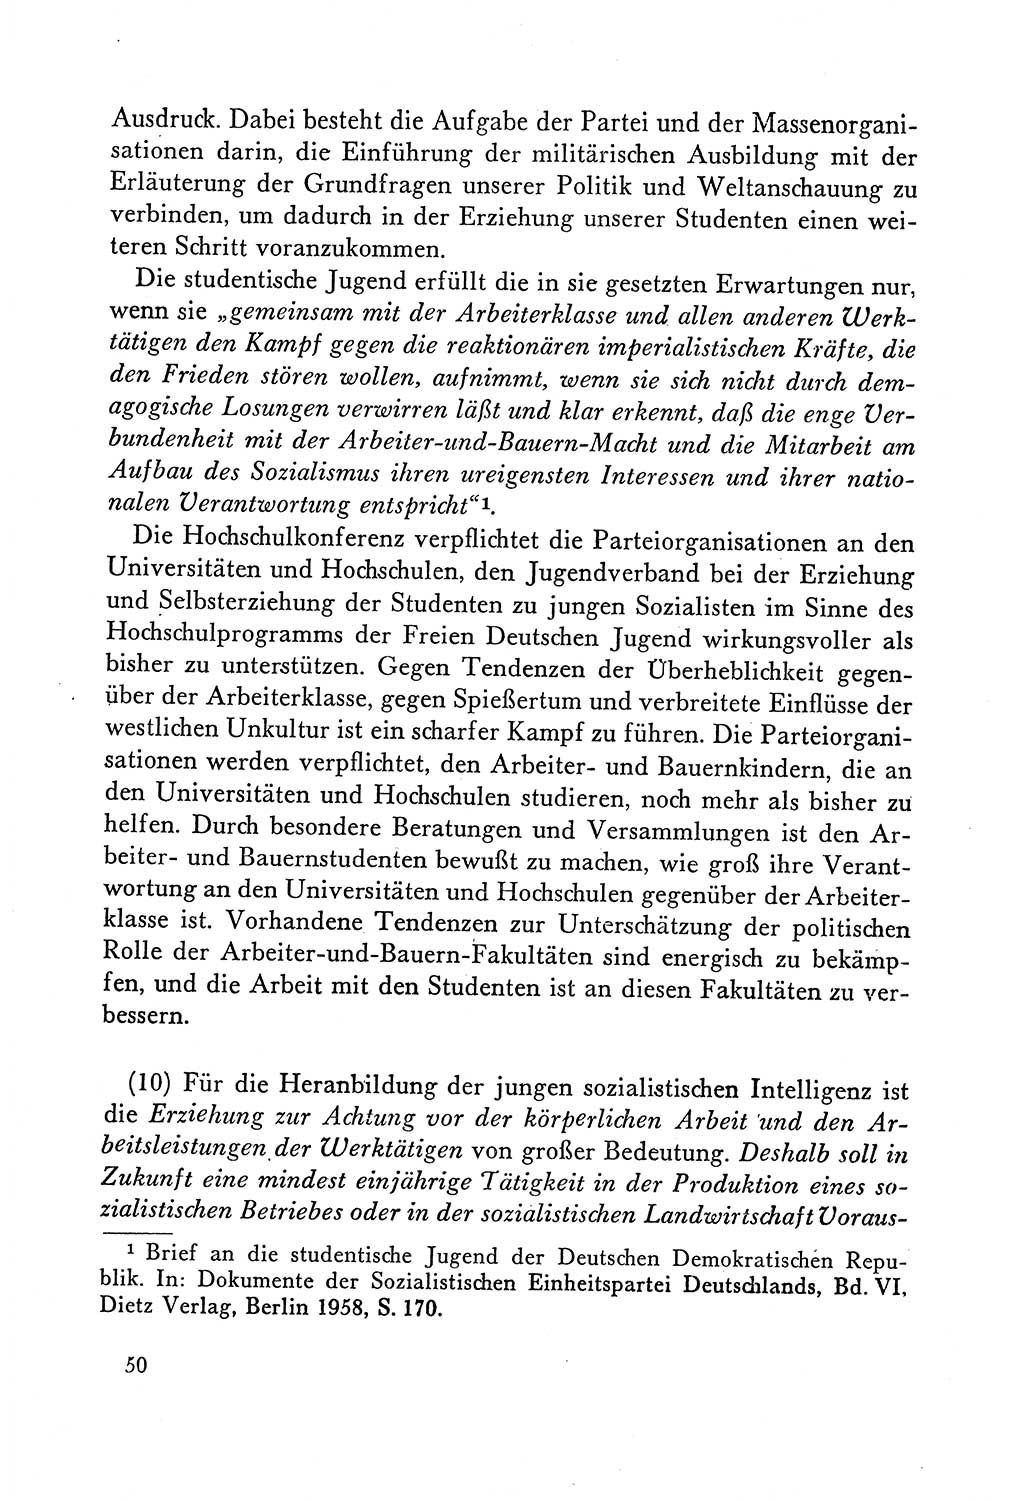 Dokumente der Sozialistischen Einheitspartei Deutschlands (SED) [Deutsche Demokratische Republik (DDR)] 1958-1959, Seite 50 (Dok. SED DDR 1958-1959, S. 50)